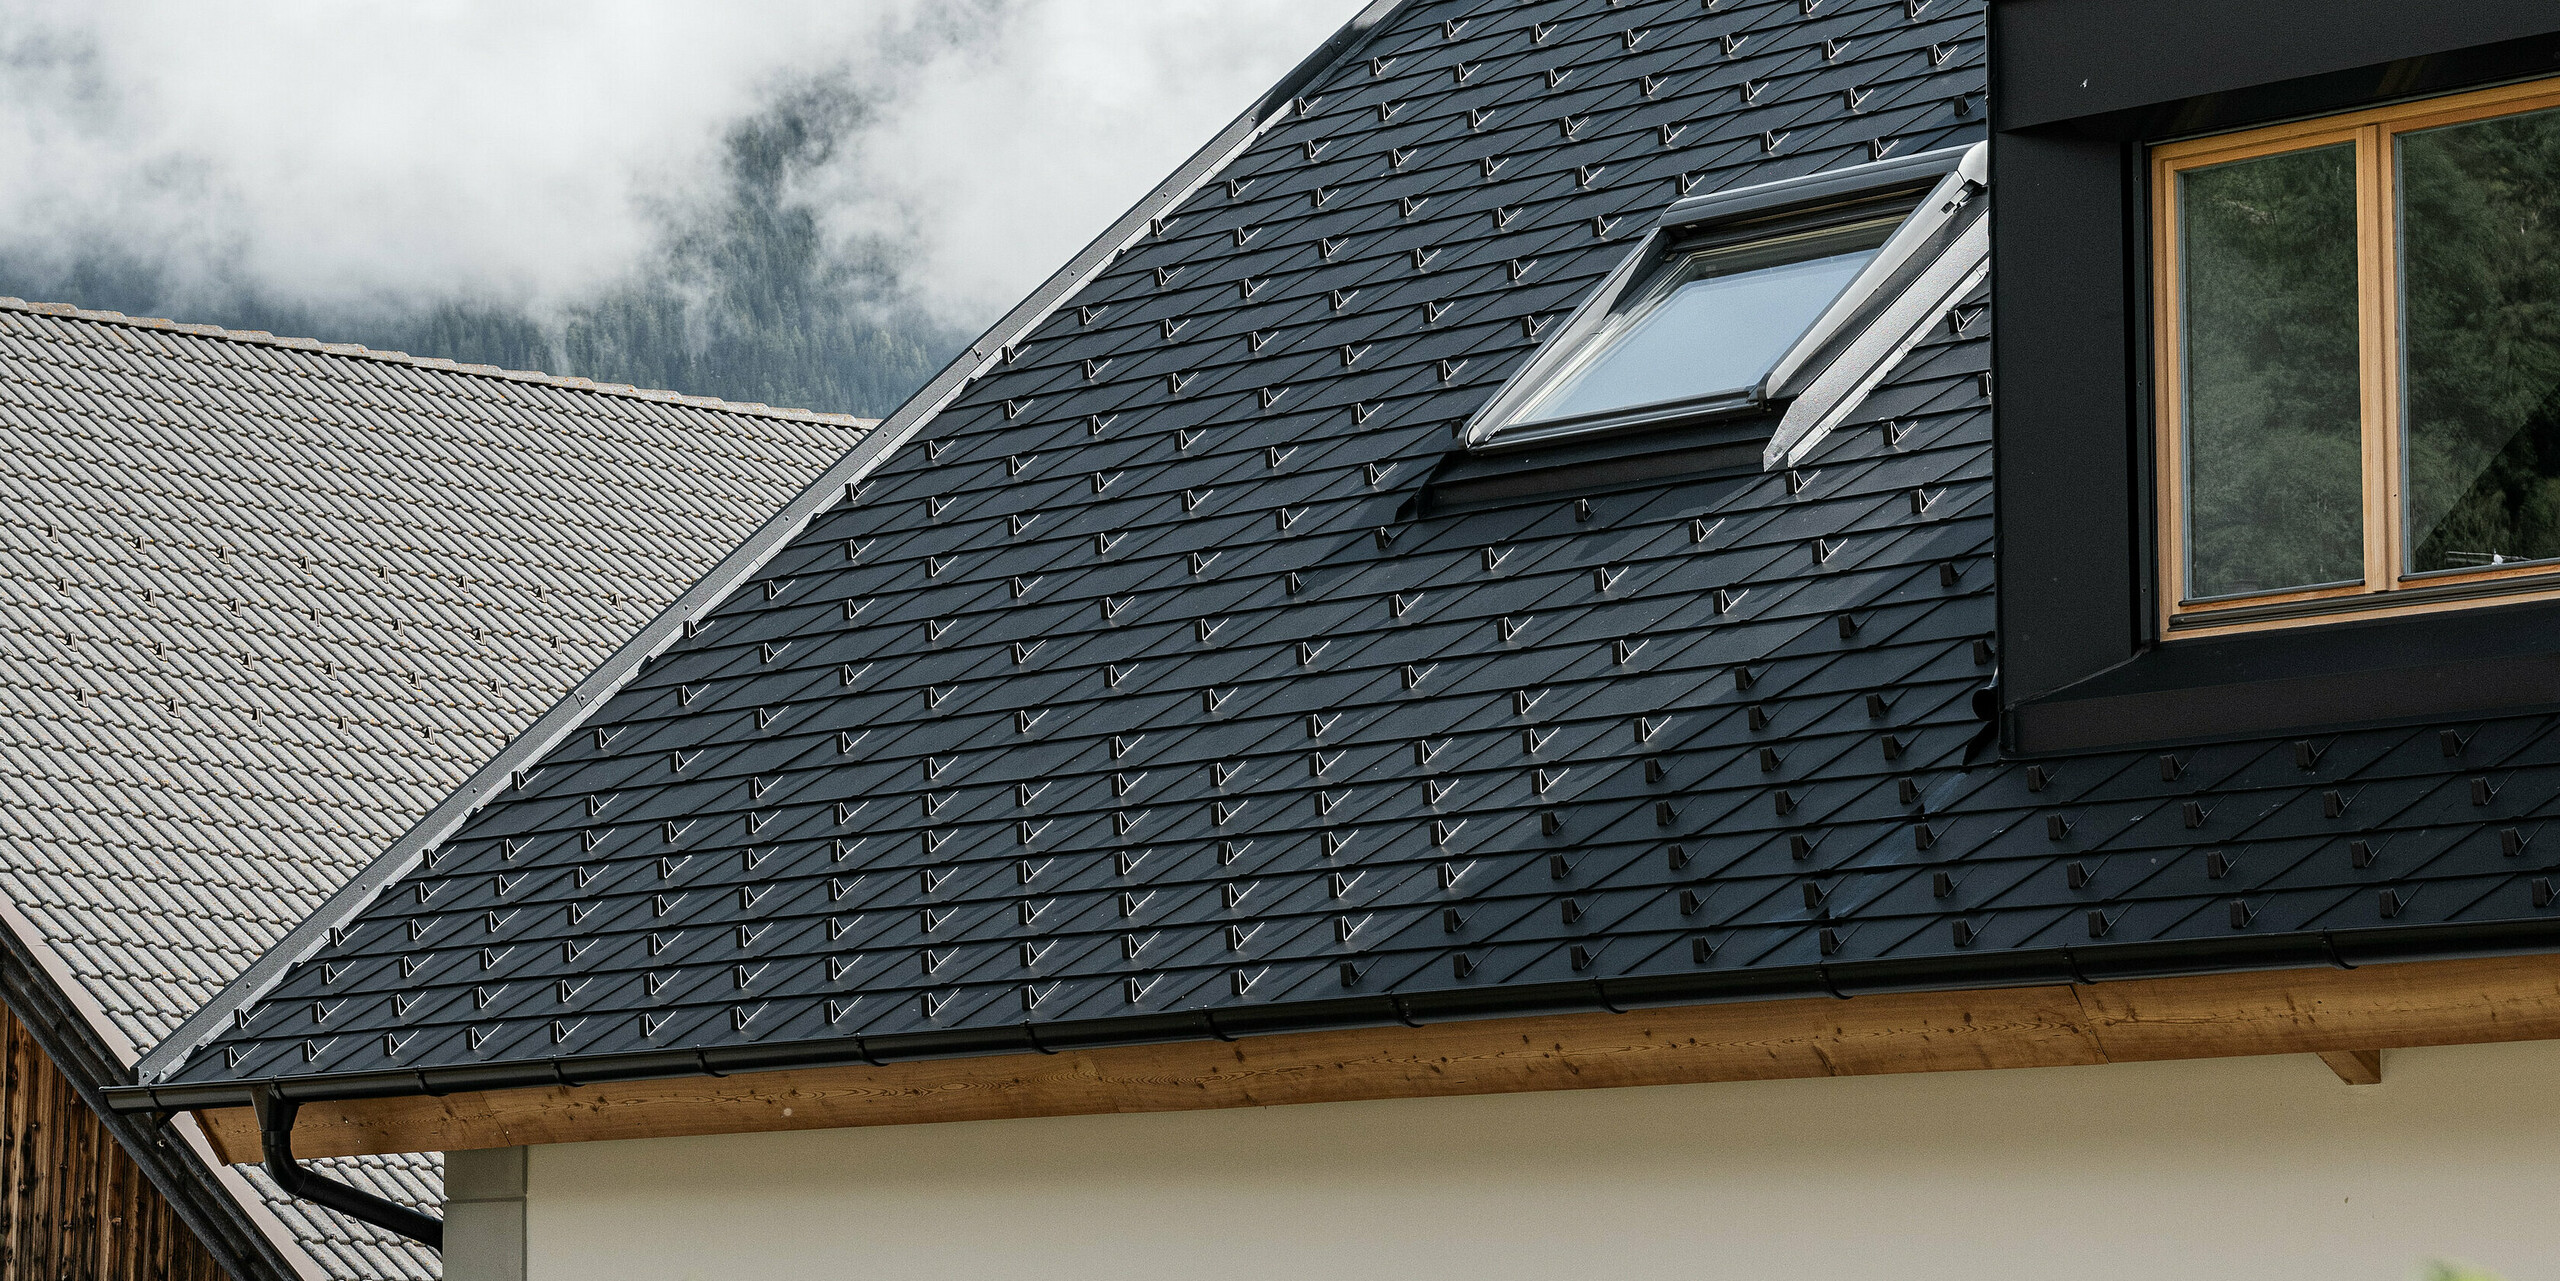 Detailansicht des wind- und wetterfesten PREFA Dachsystems. Das Satteldach des Außerwegerhofs in Südtirol wurde mit robusten PREAF DS.19 Dachschindeln in P.10 anthrazit eingedeckt. Die ästhetische Dachgestaltung ist umgeben von der beeindruckenden Bergkulisse des Antholzertals.